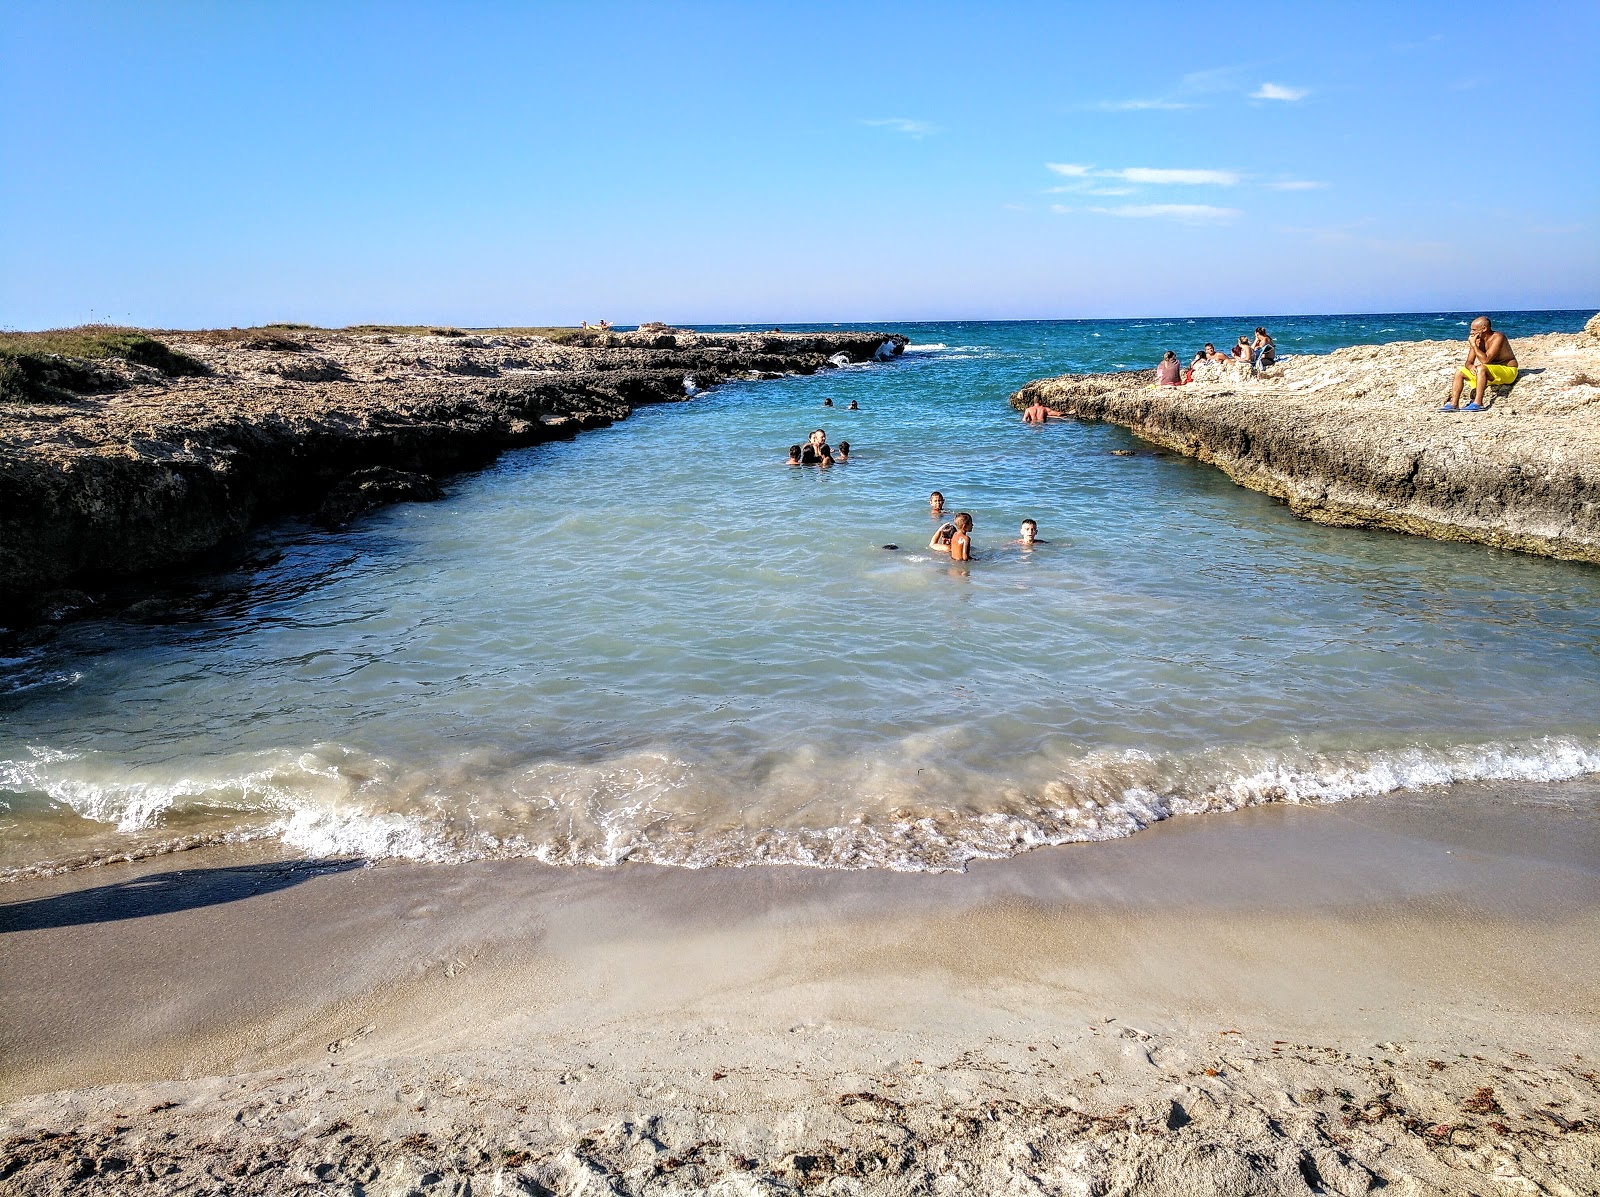 Costa Merlata beach'in fotoğrafı parlak kum yüzey ile